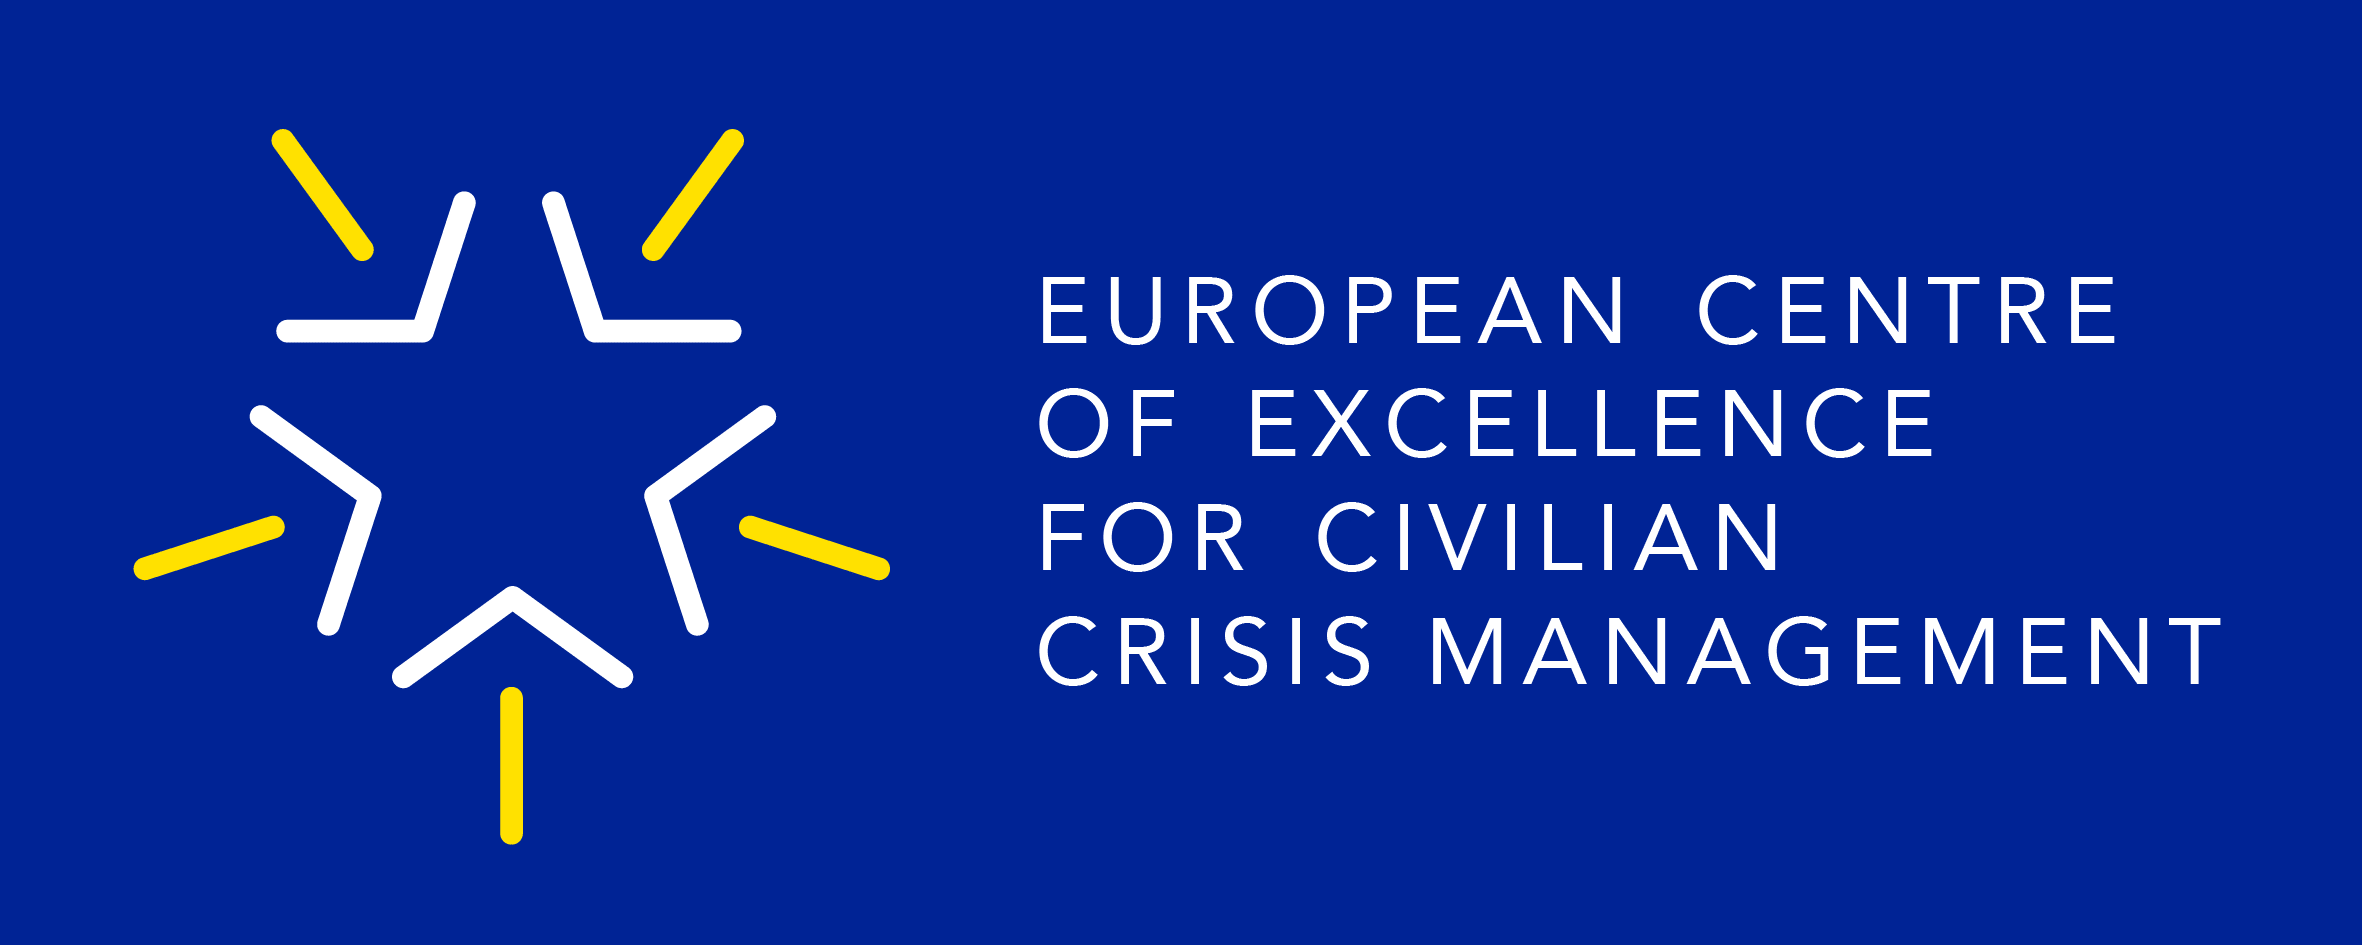 European Centre of Excellence for Civilian Crisis Management logo